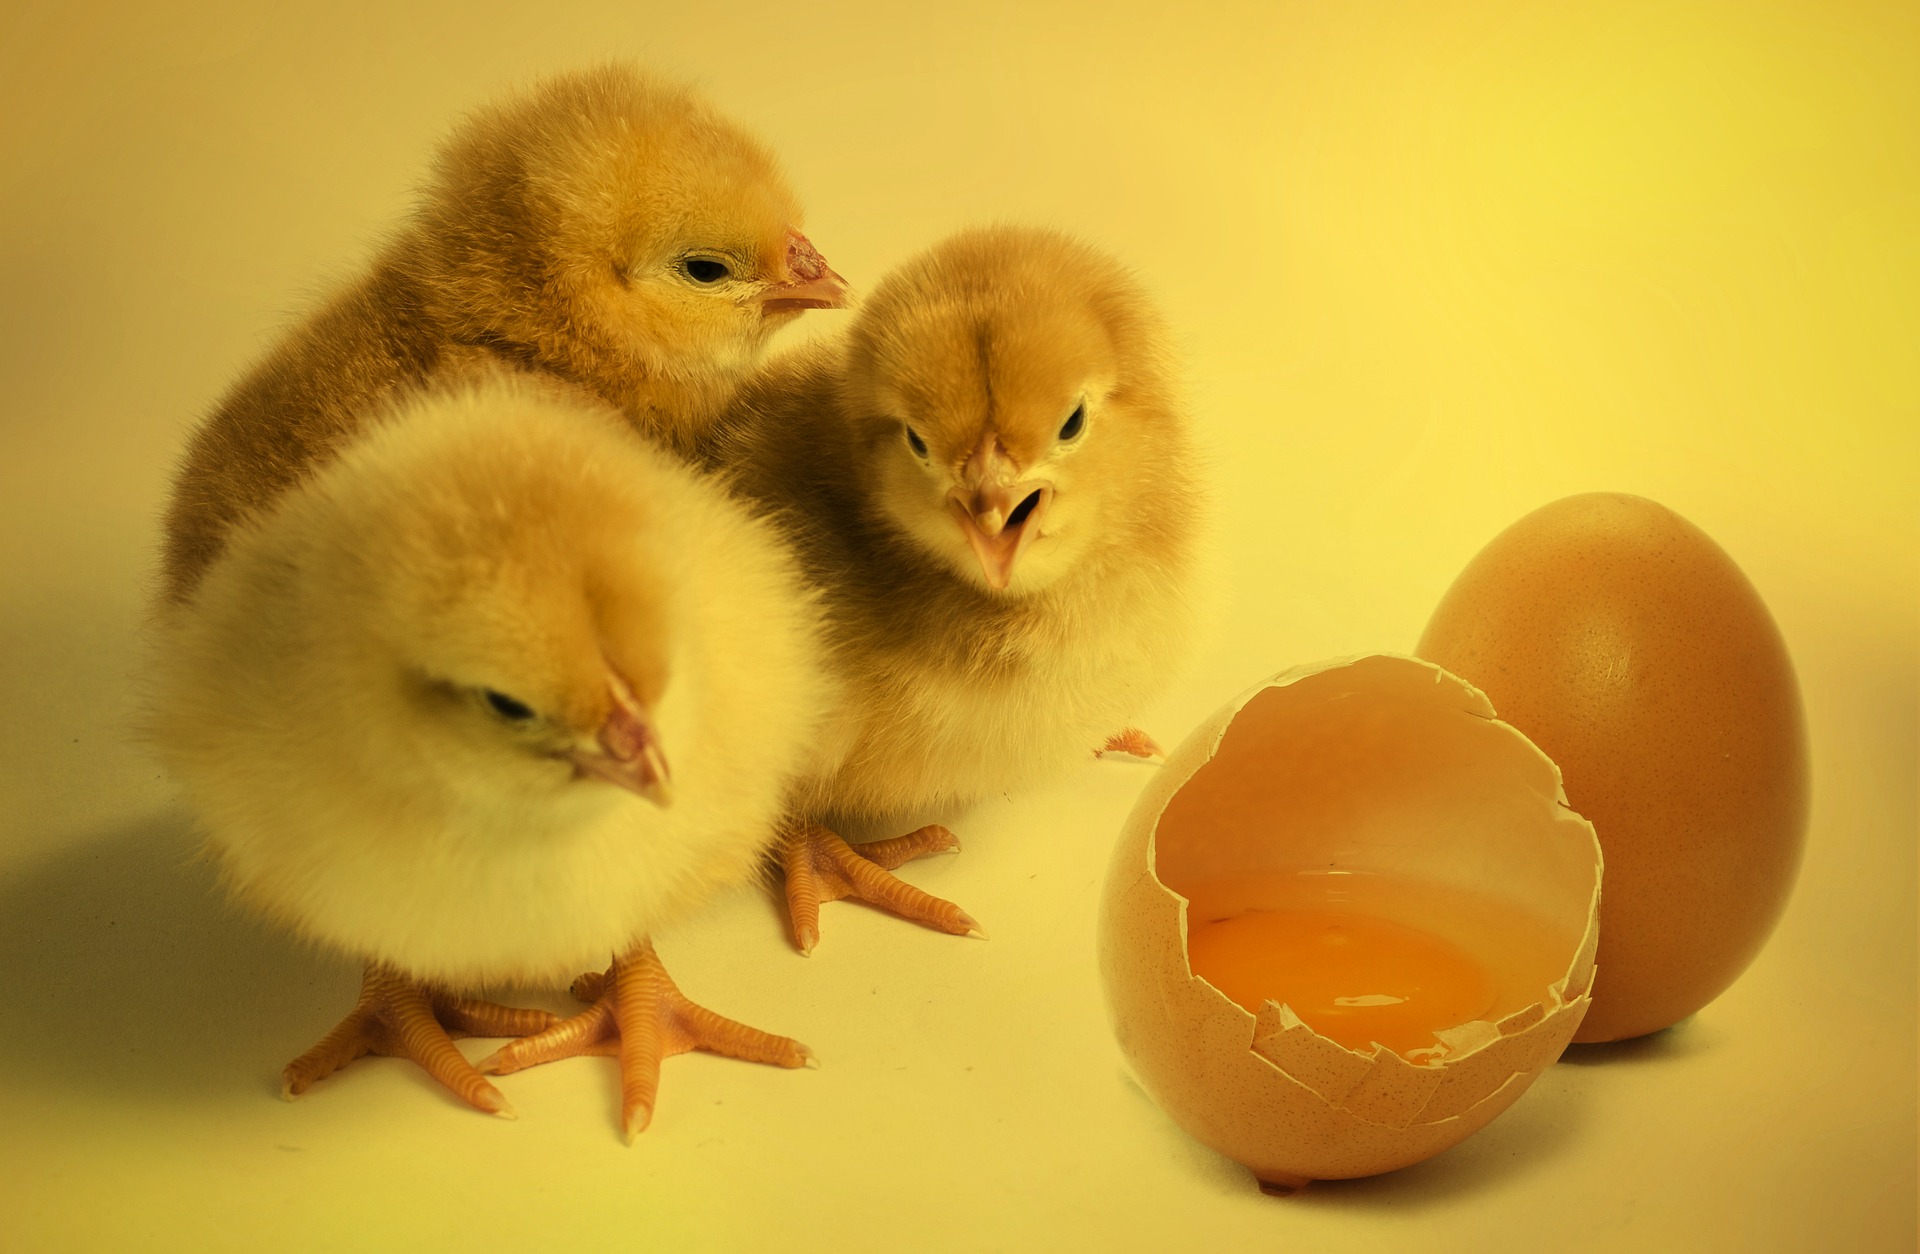 孵化从鸡蛋的玩具鸡 库存照片. 图片 包括有 新出生, 破裂, 鸡蛋, 小鸡, 庆祝, 本质, 诞生, 饮食 - 111915696